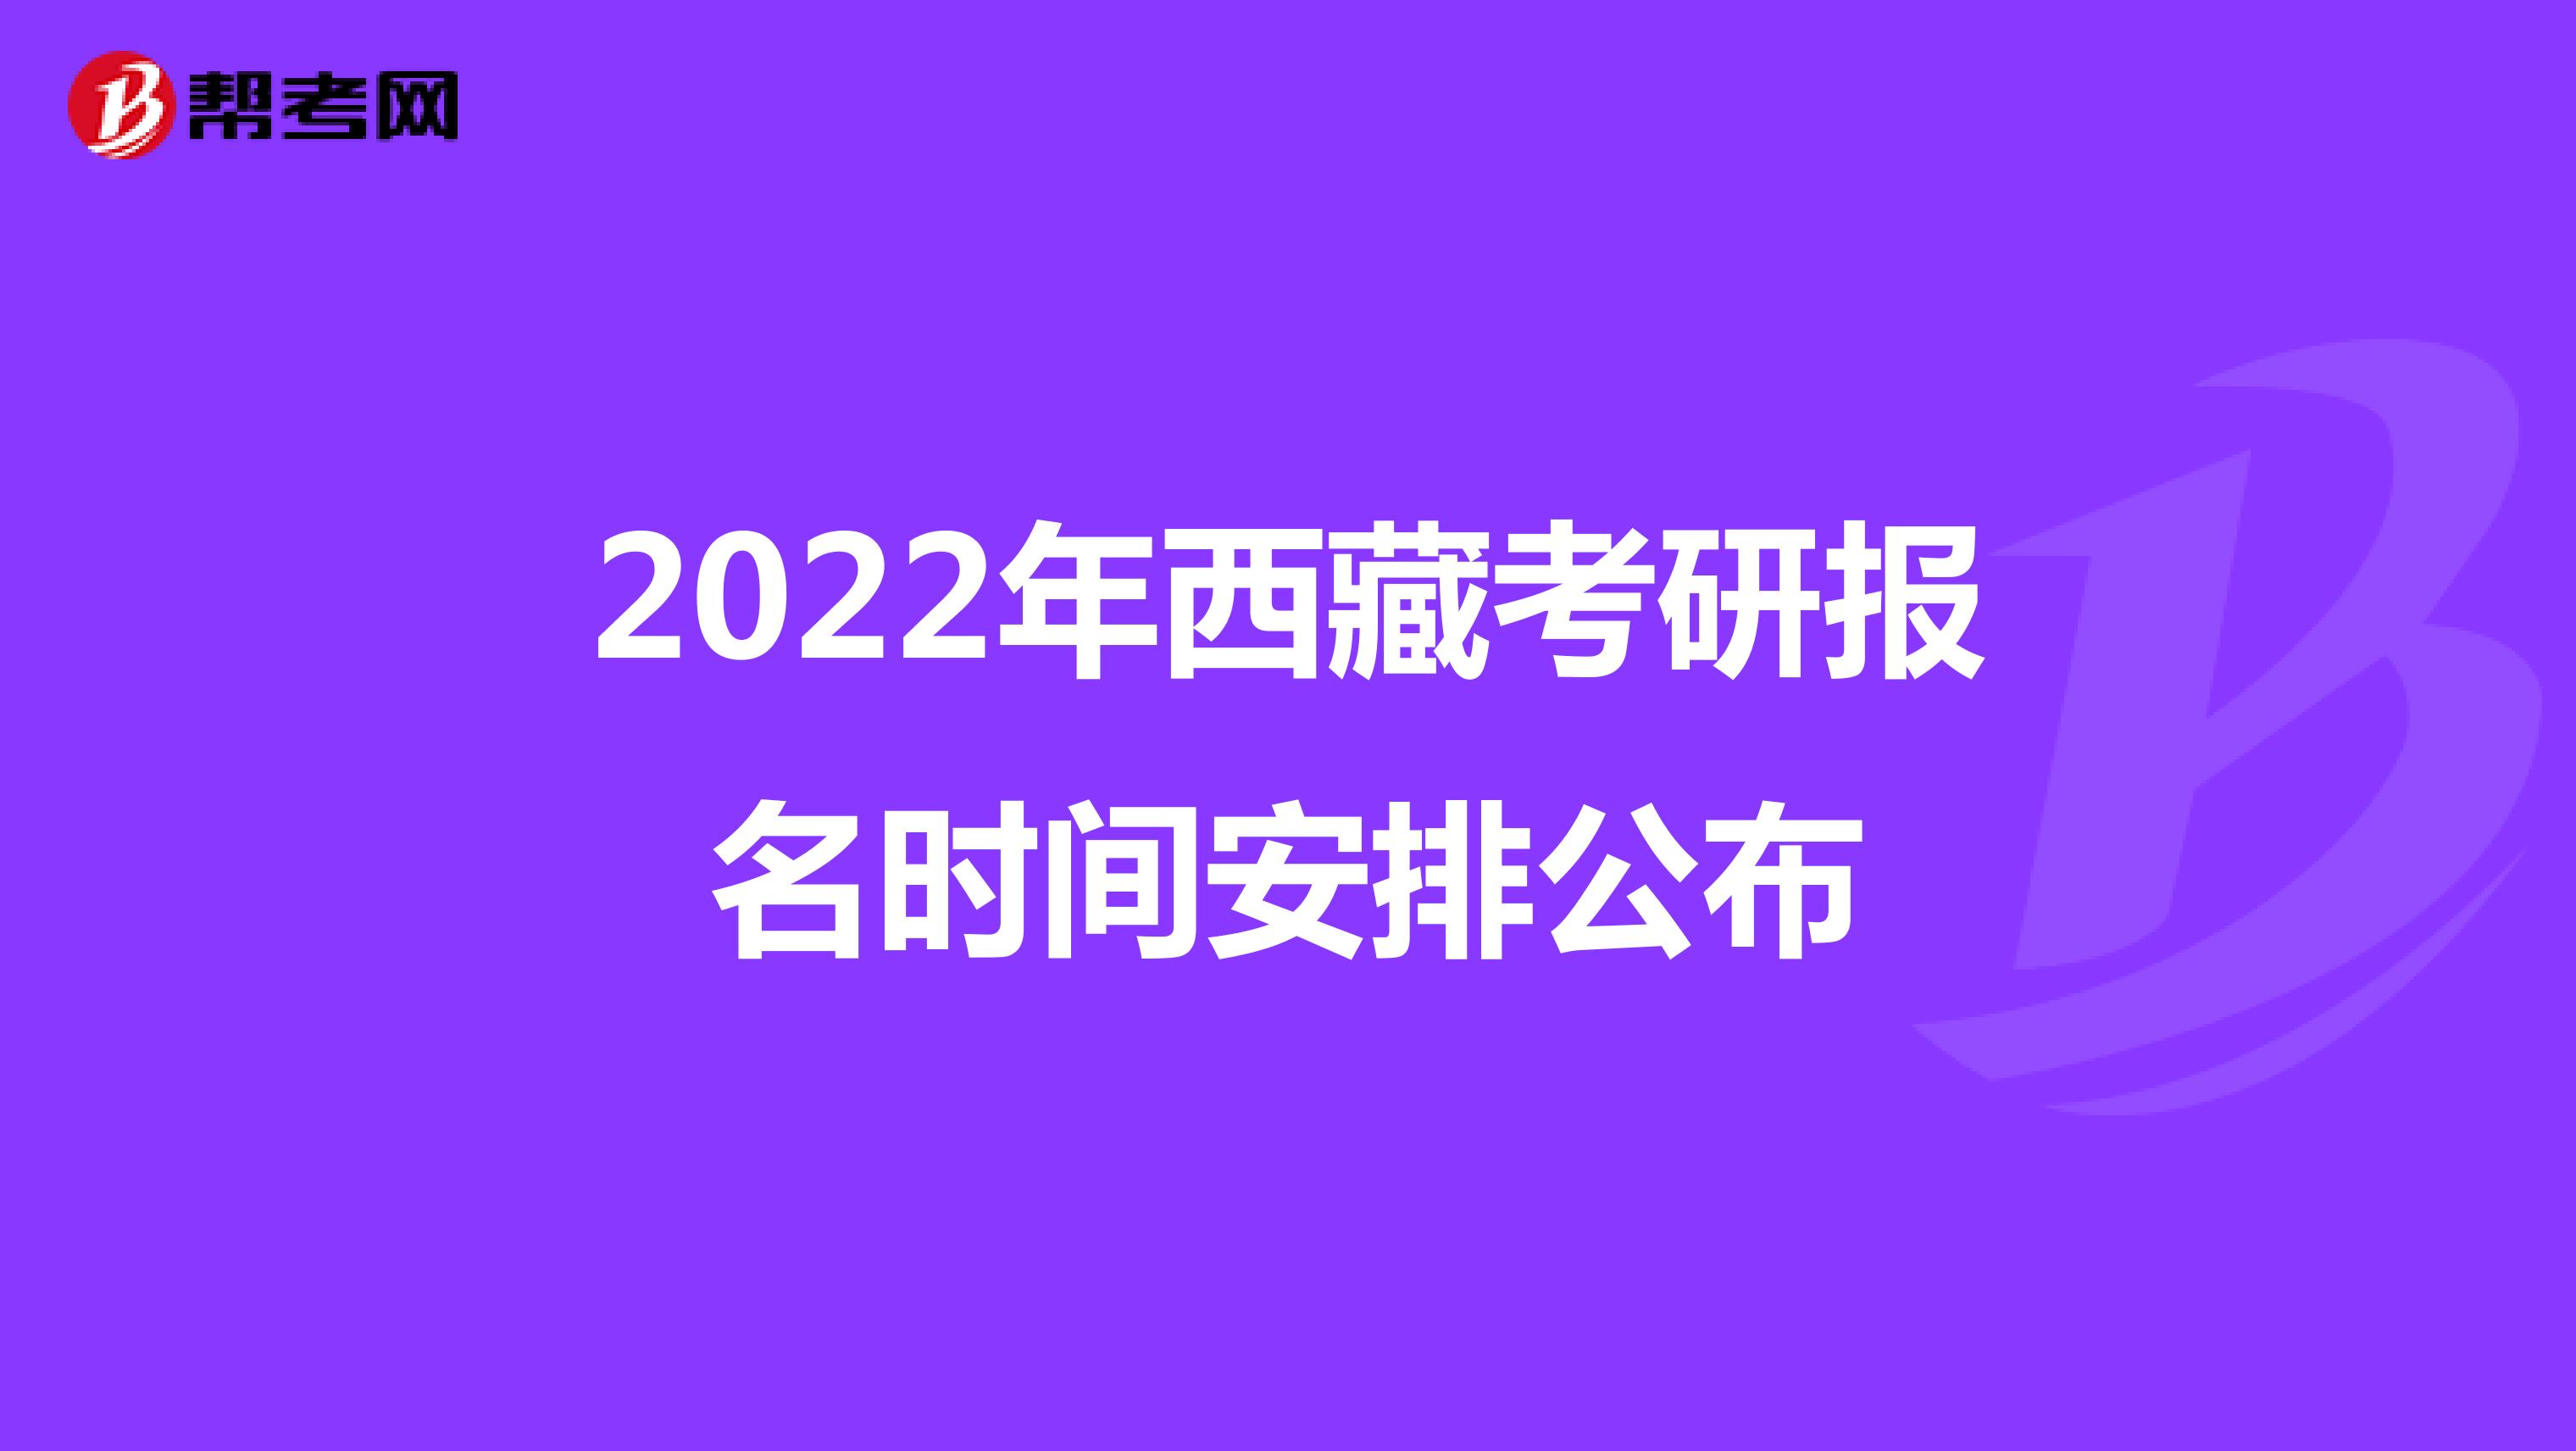 2022年西藏考研报名时间安排公布